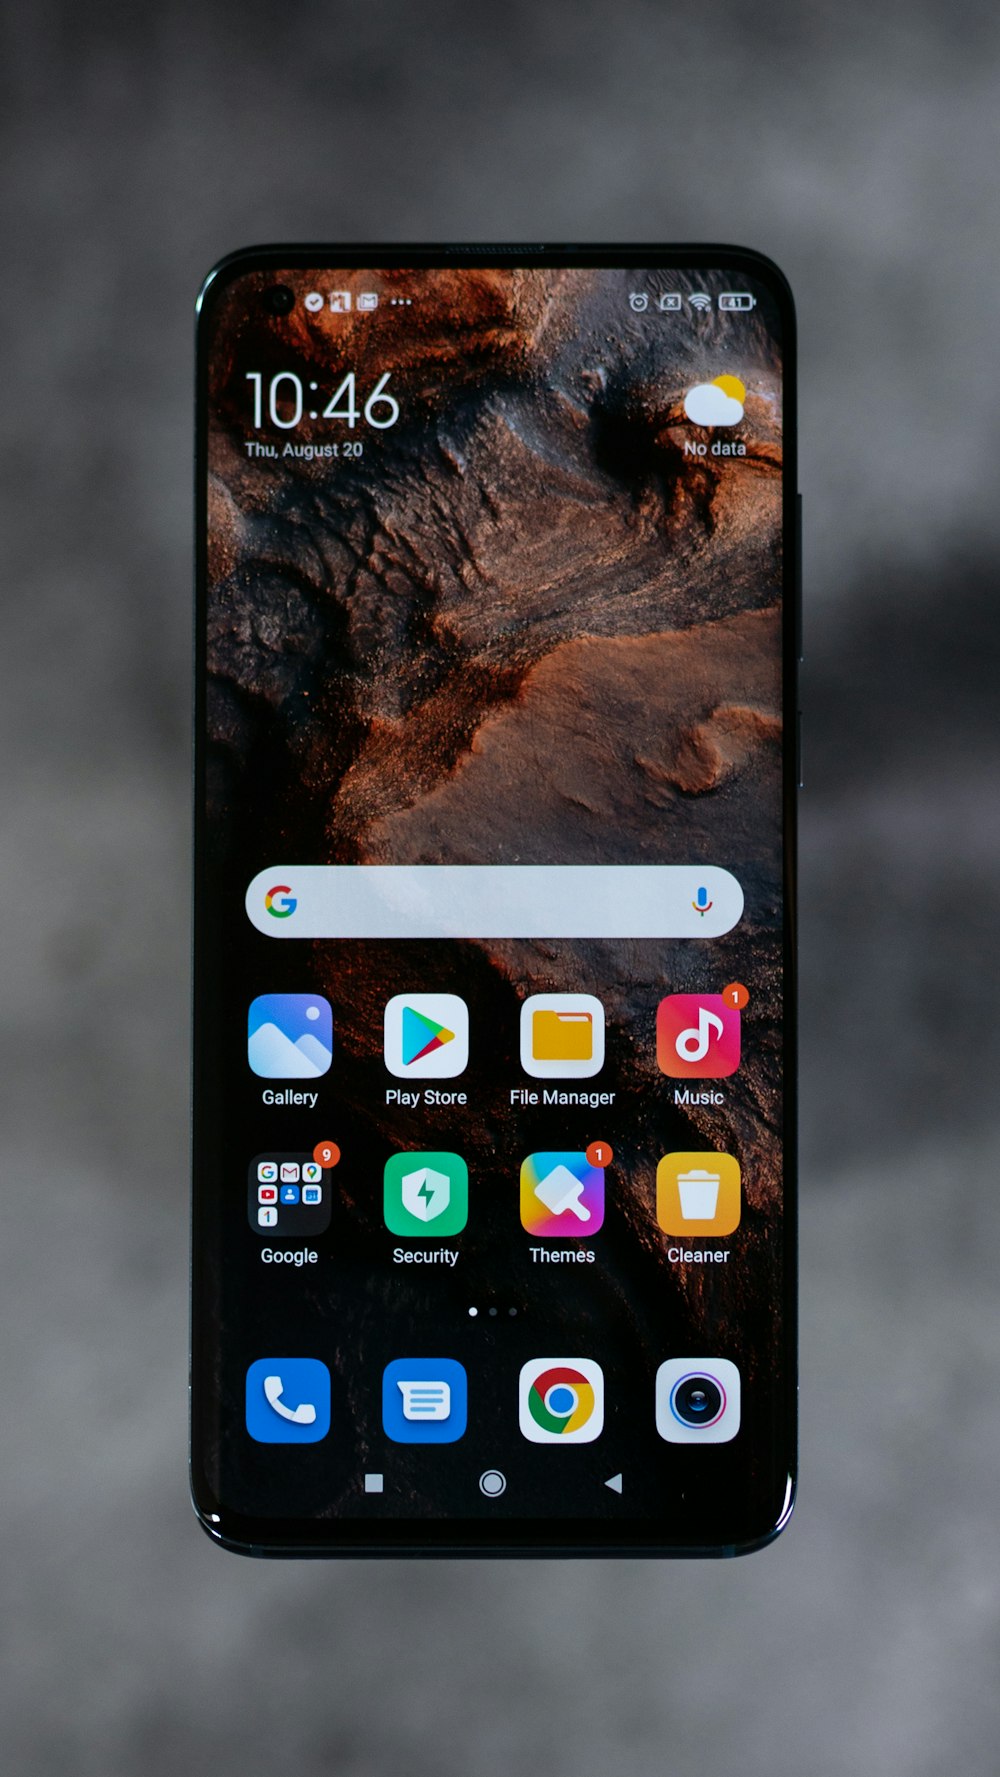 Écran de l’iPhone affichant des icônes à l’écran